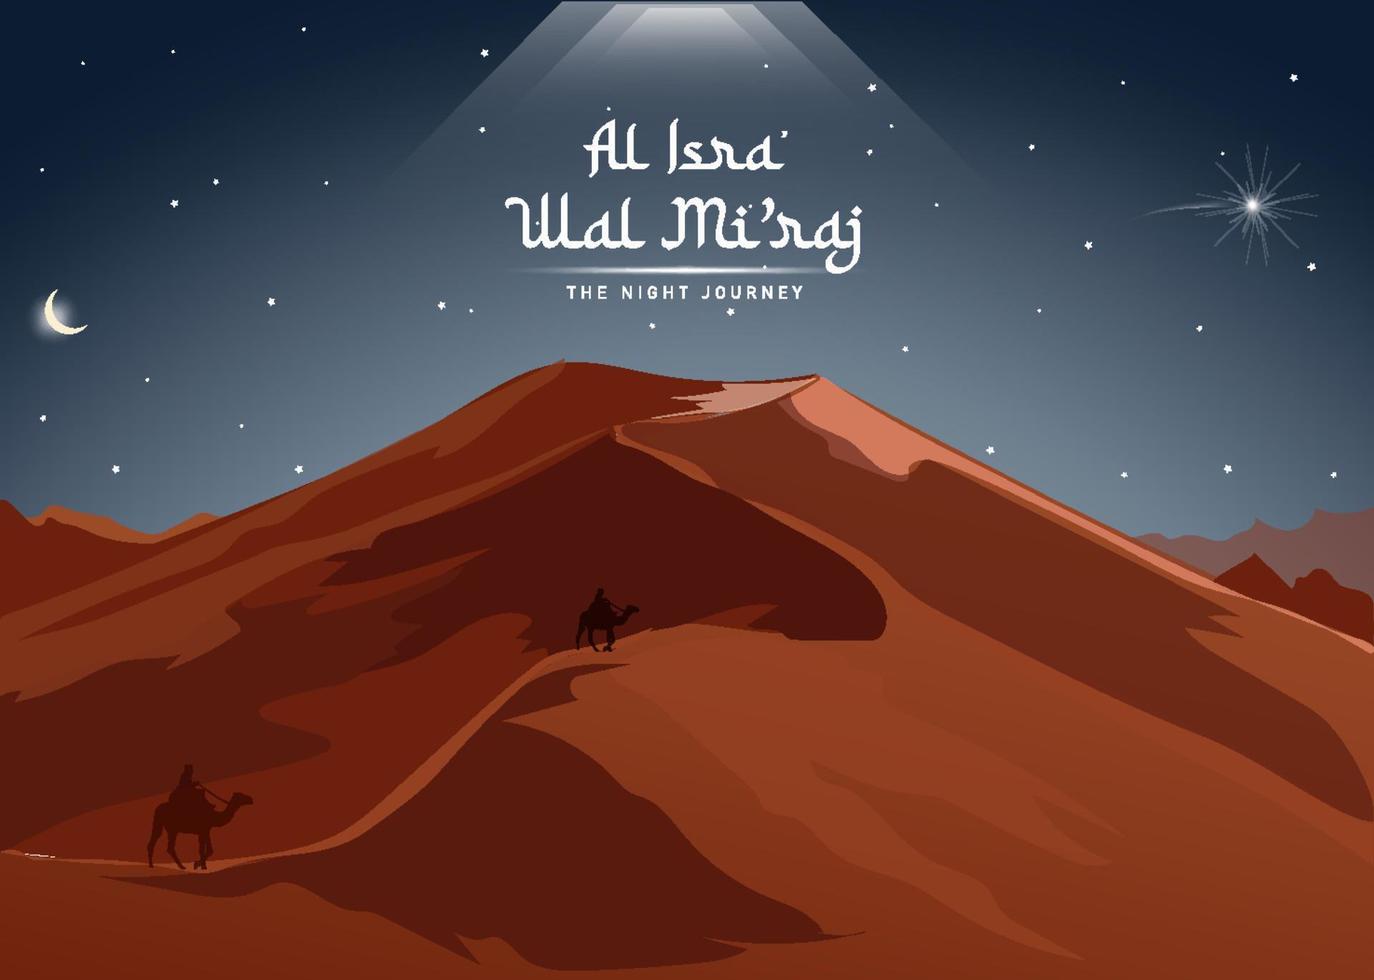 al-isra' wal mi'raj a jornada noturna do profeta muhammad. modelo de design de fundo islâmico com ilustração 3d de uma silhueta de um viajante com um camelo no deserto, ilustração vetorial vetor